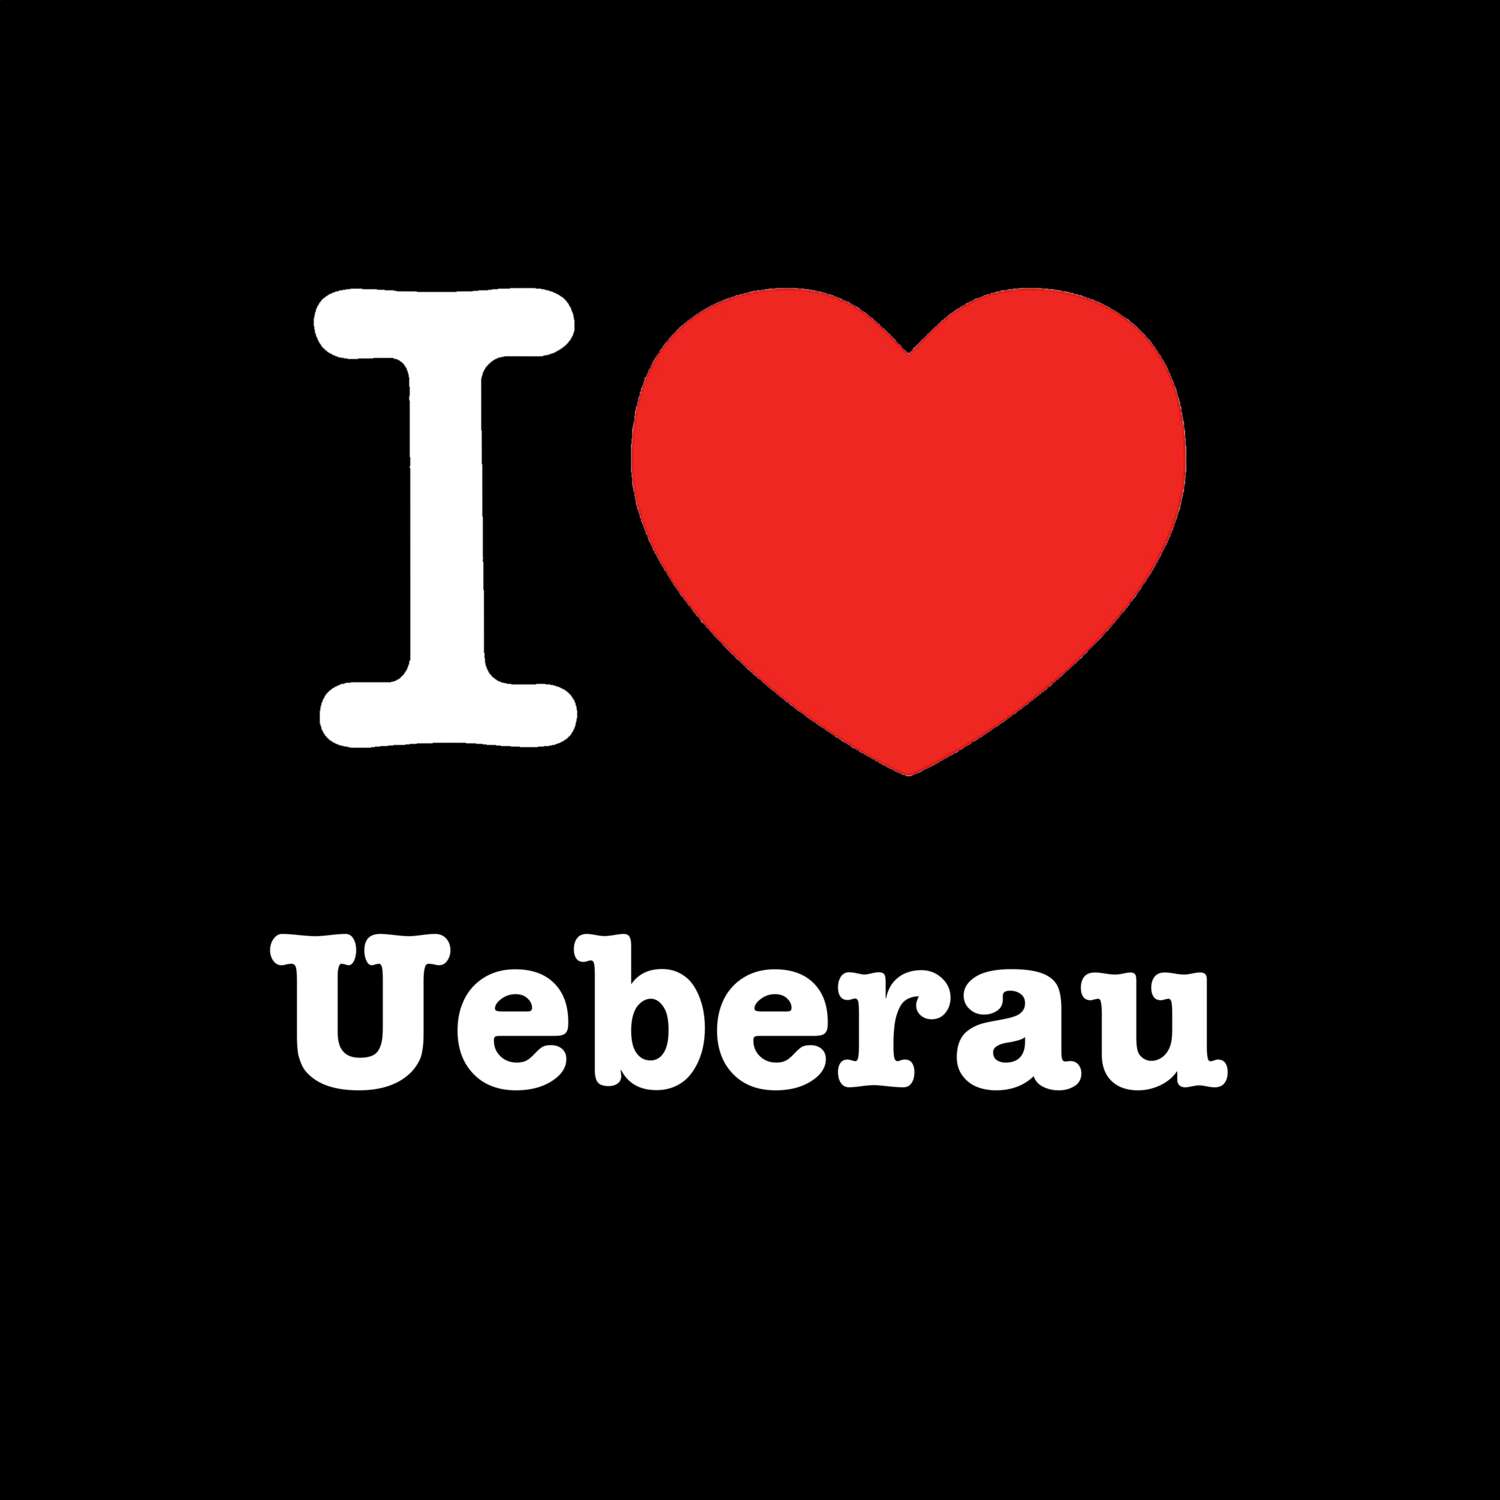 Ueberau T-Shirt »I love«